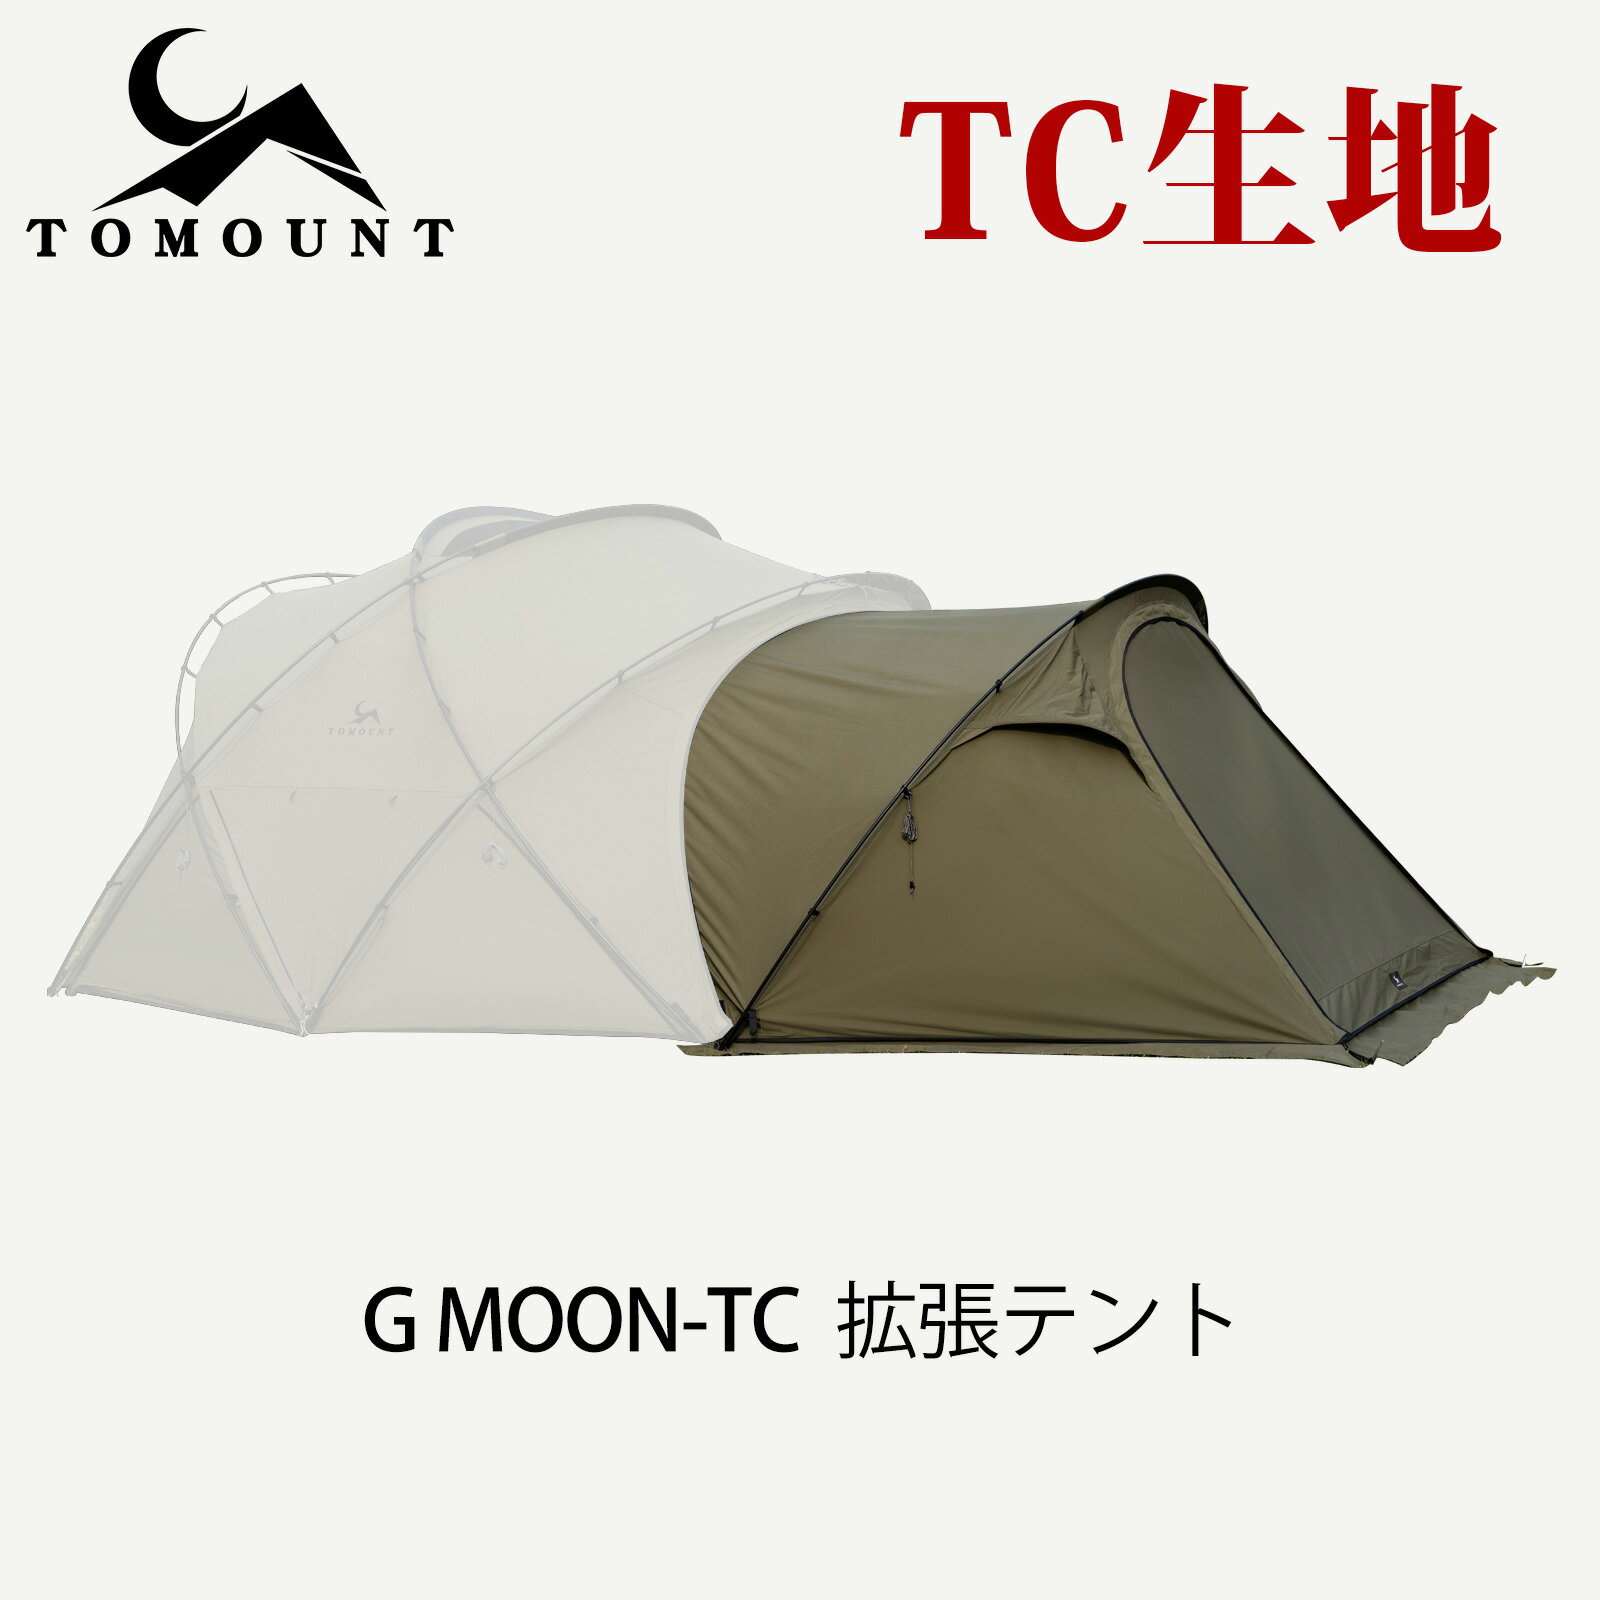 TOMOUNT G MOON-TC 拡張テント インナーテントなし 